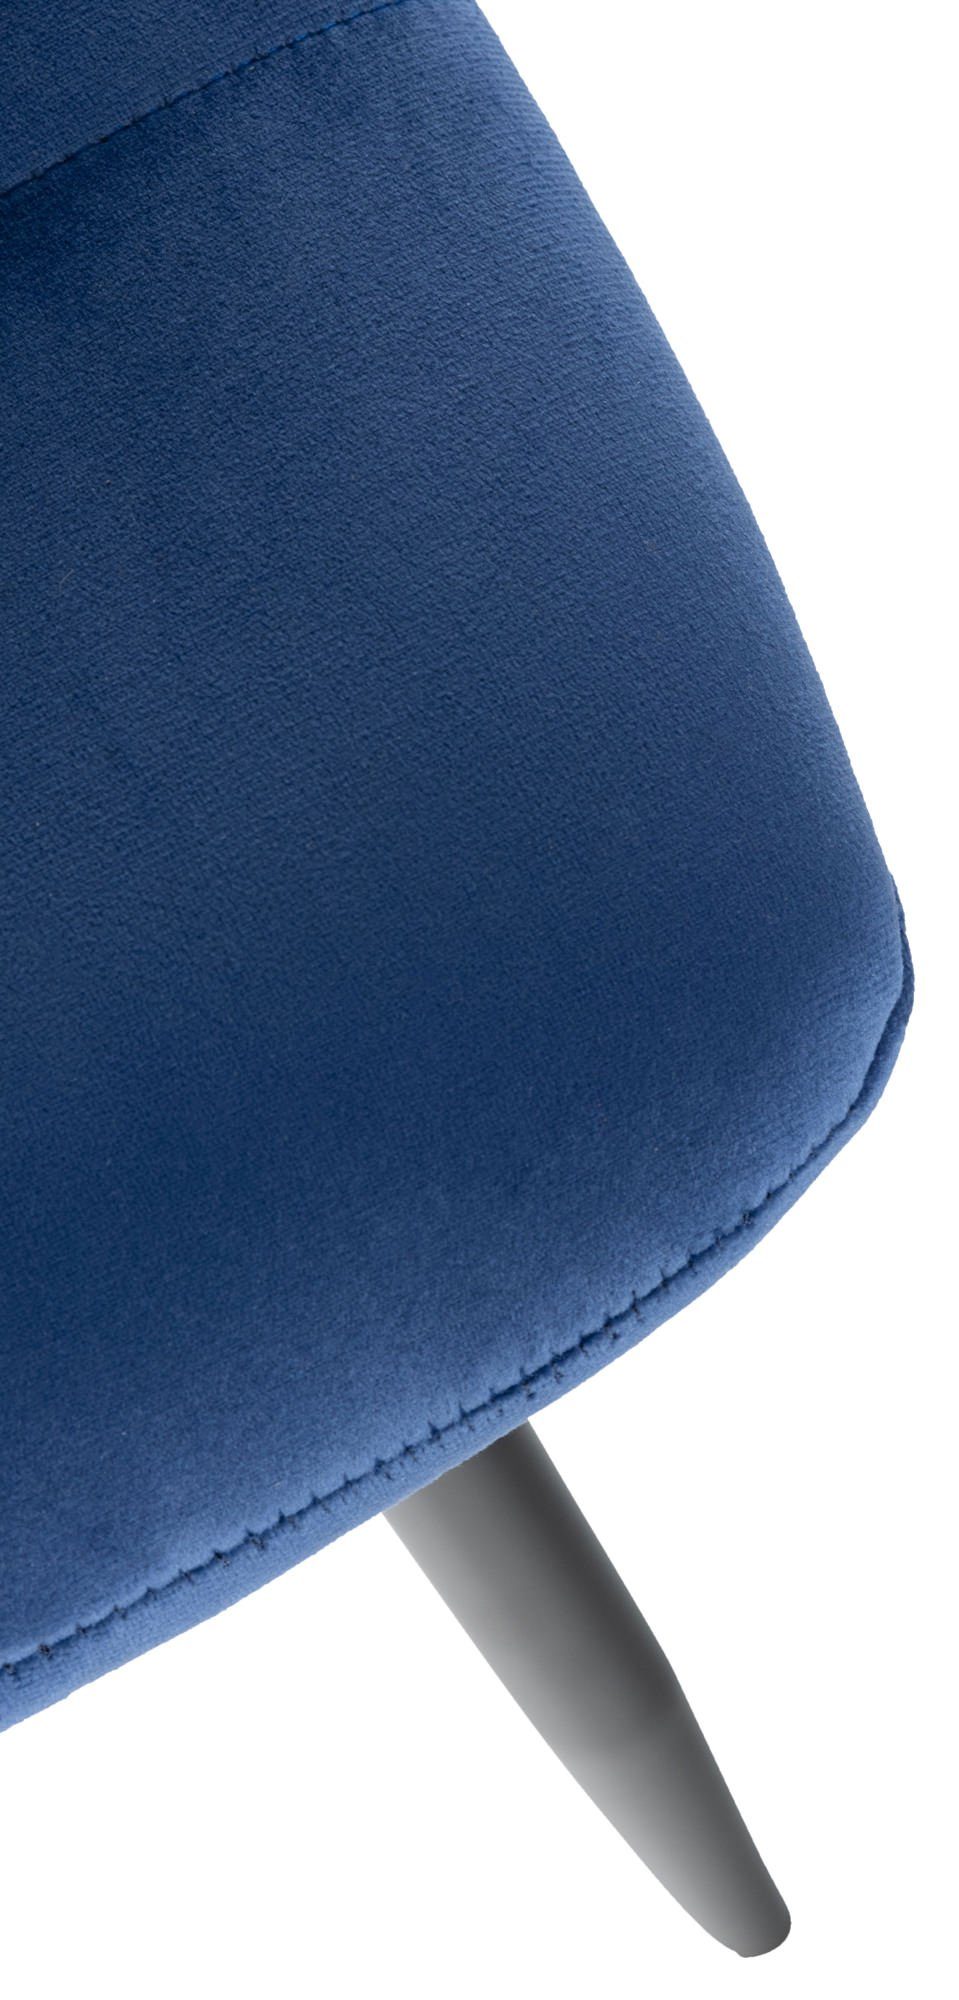 TPFLiving Esszimmerstuhl - blau mit (Küchenstuhl - Samt Atina hochwertig Metall Gestell: Sitzfläche schwarz - Wohnzimmerstuhl), Sitzfläche: gepolsterter Konferenzstuhl